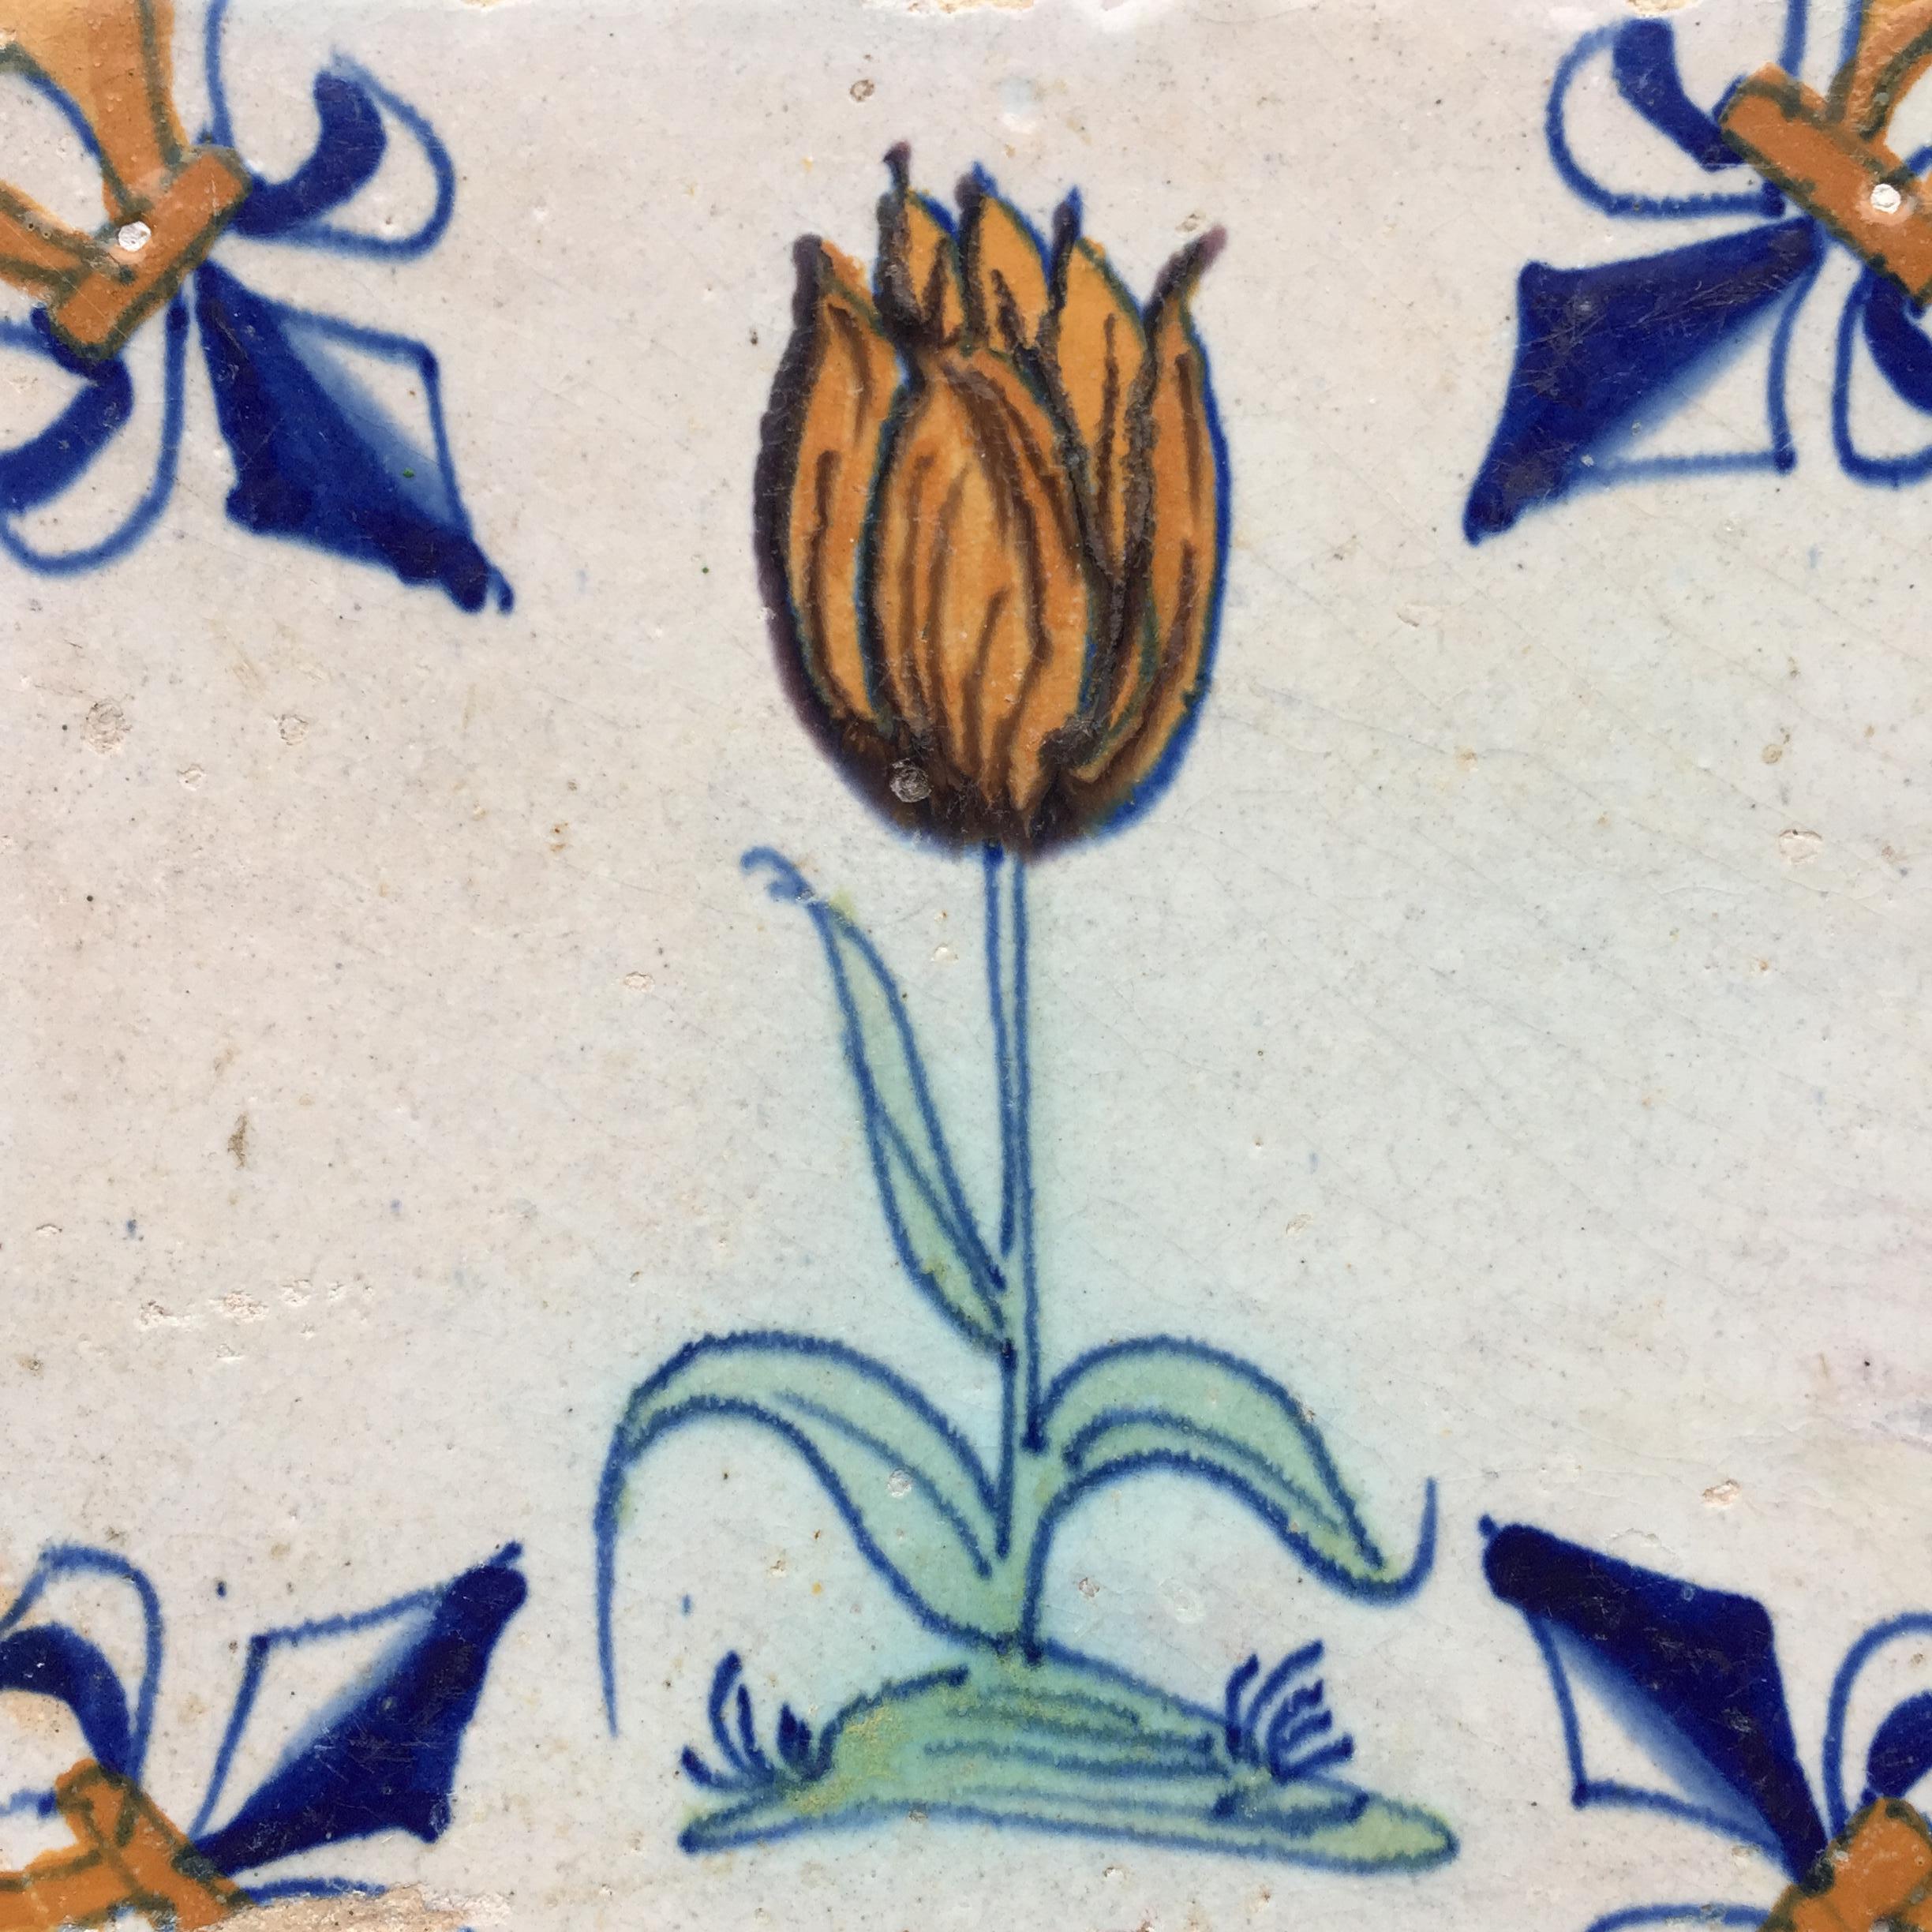 Die Niederlande
CIRCA 1620 - 1640

Eine polychrome holländische Fliese mit dem Dekor einer orange geflammten Tulpe.
Diese Fliese mit einer sehr großen Tulpe wurde während der Tulpenmanie gemalt, als Tulpen so teuer wie ein Kanalbau waren und ein